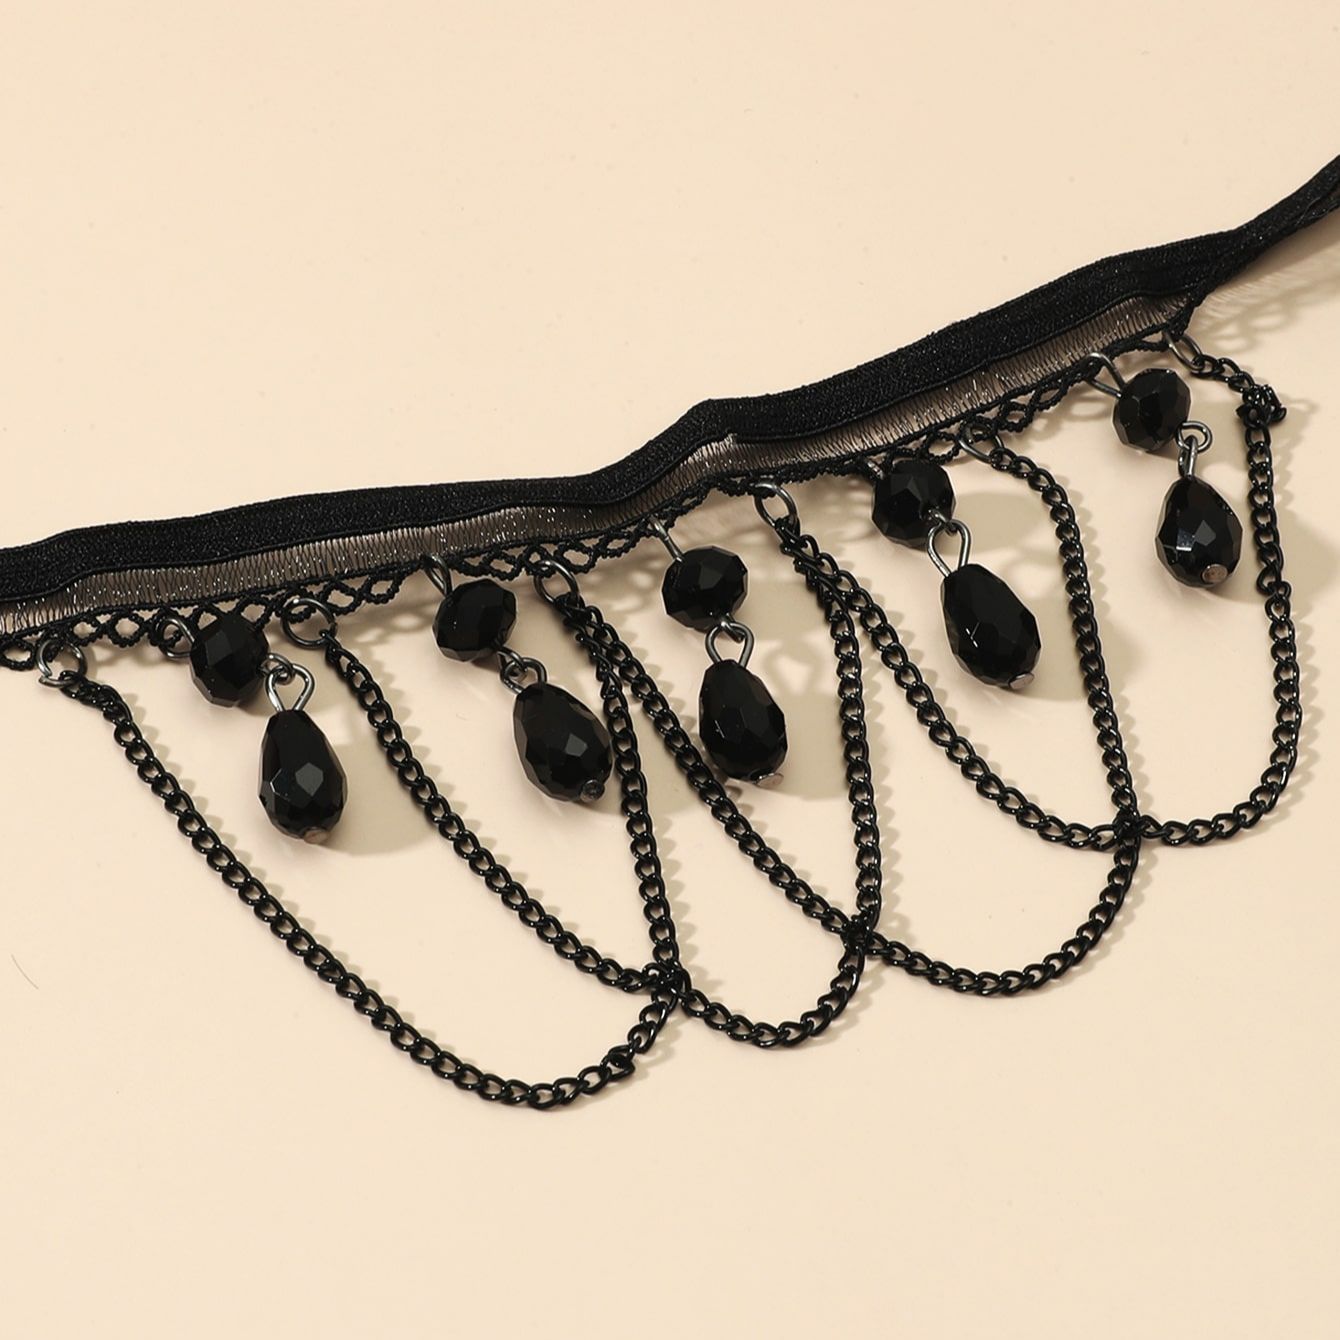 Gótico Fringe Punk Black Colar Chain Chain Lace Anklet Women Foot Bracelet